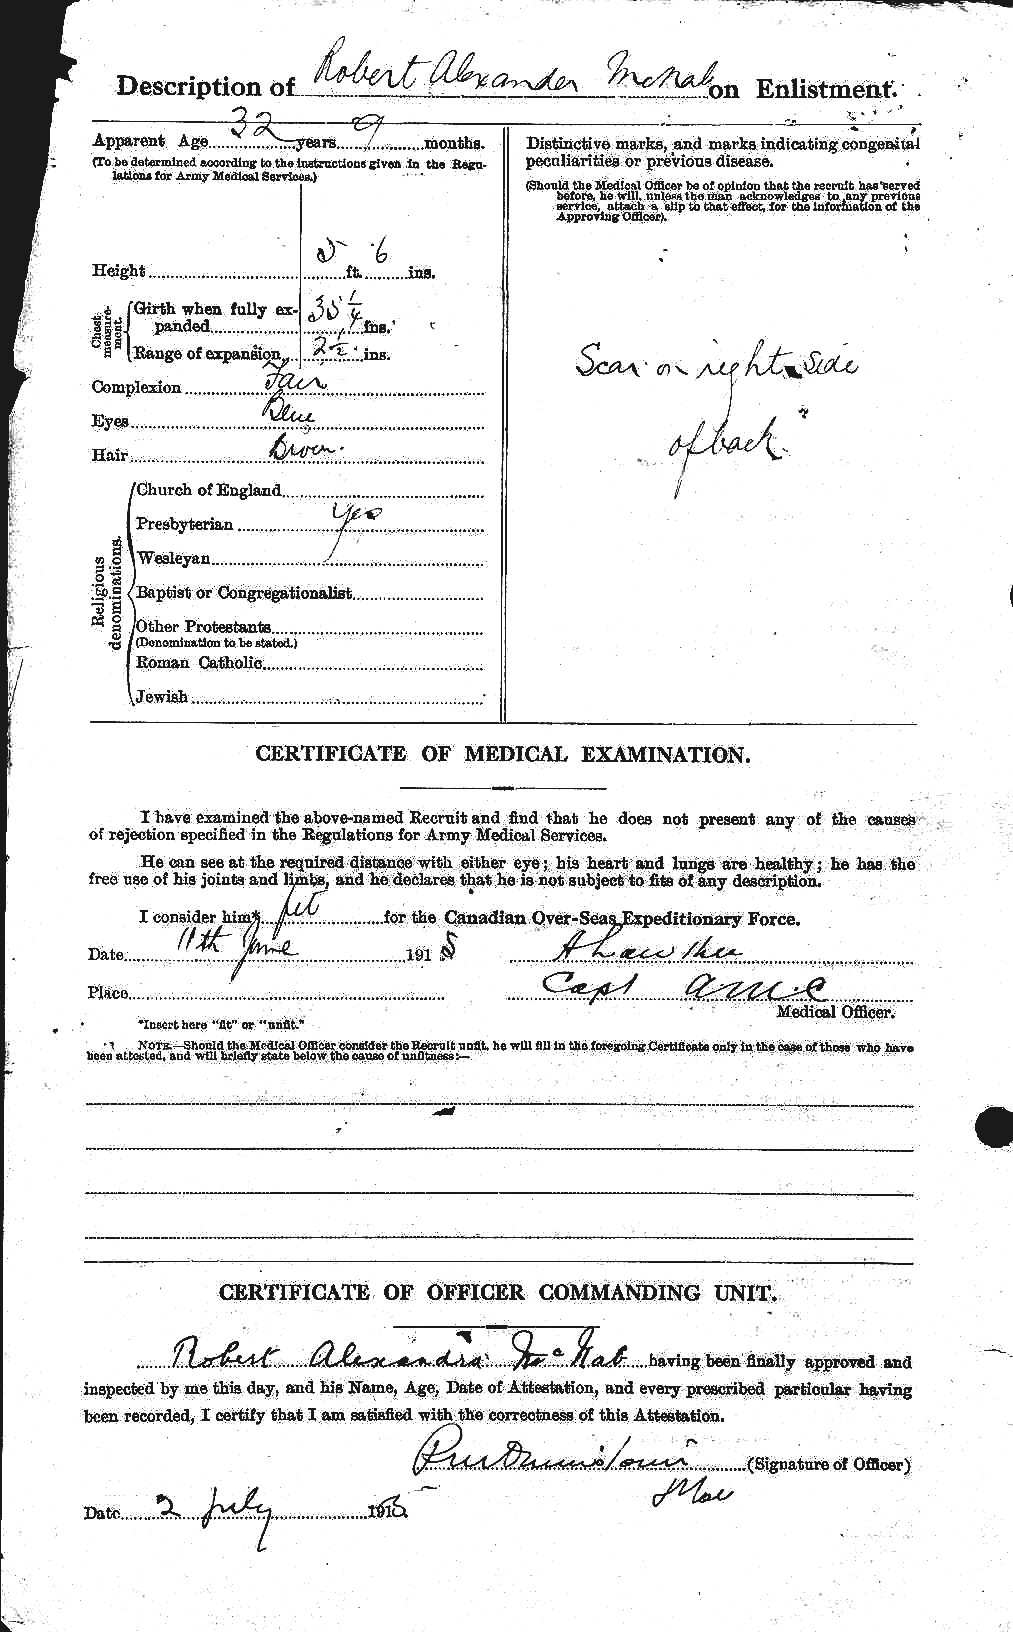 Dossiers du Personnel de la Première Guerre mondiale - CEC 536273b